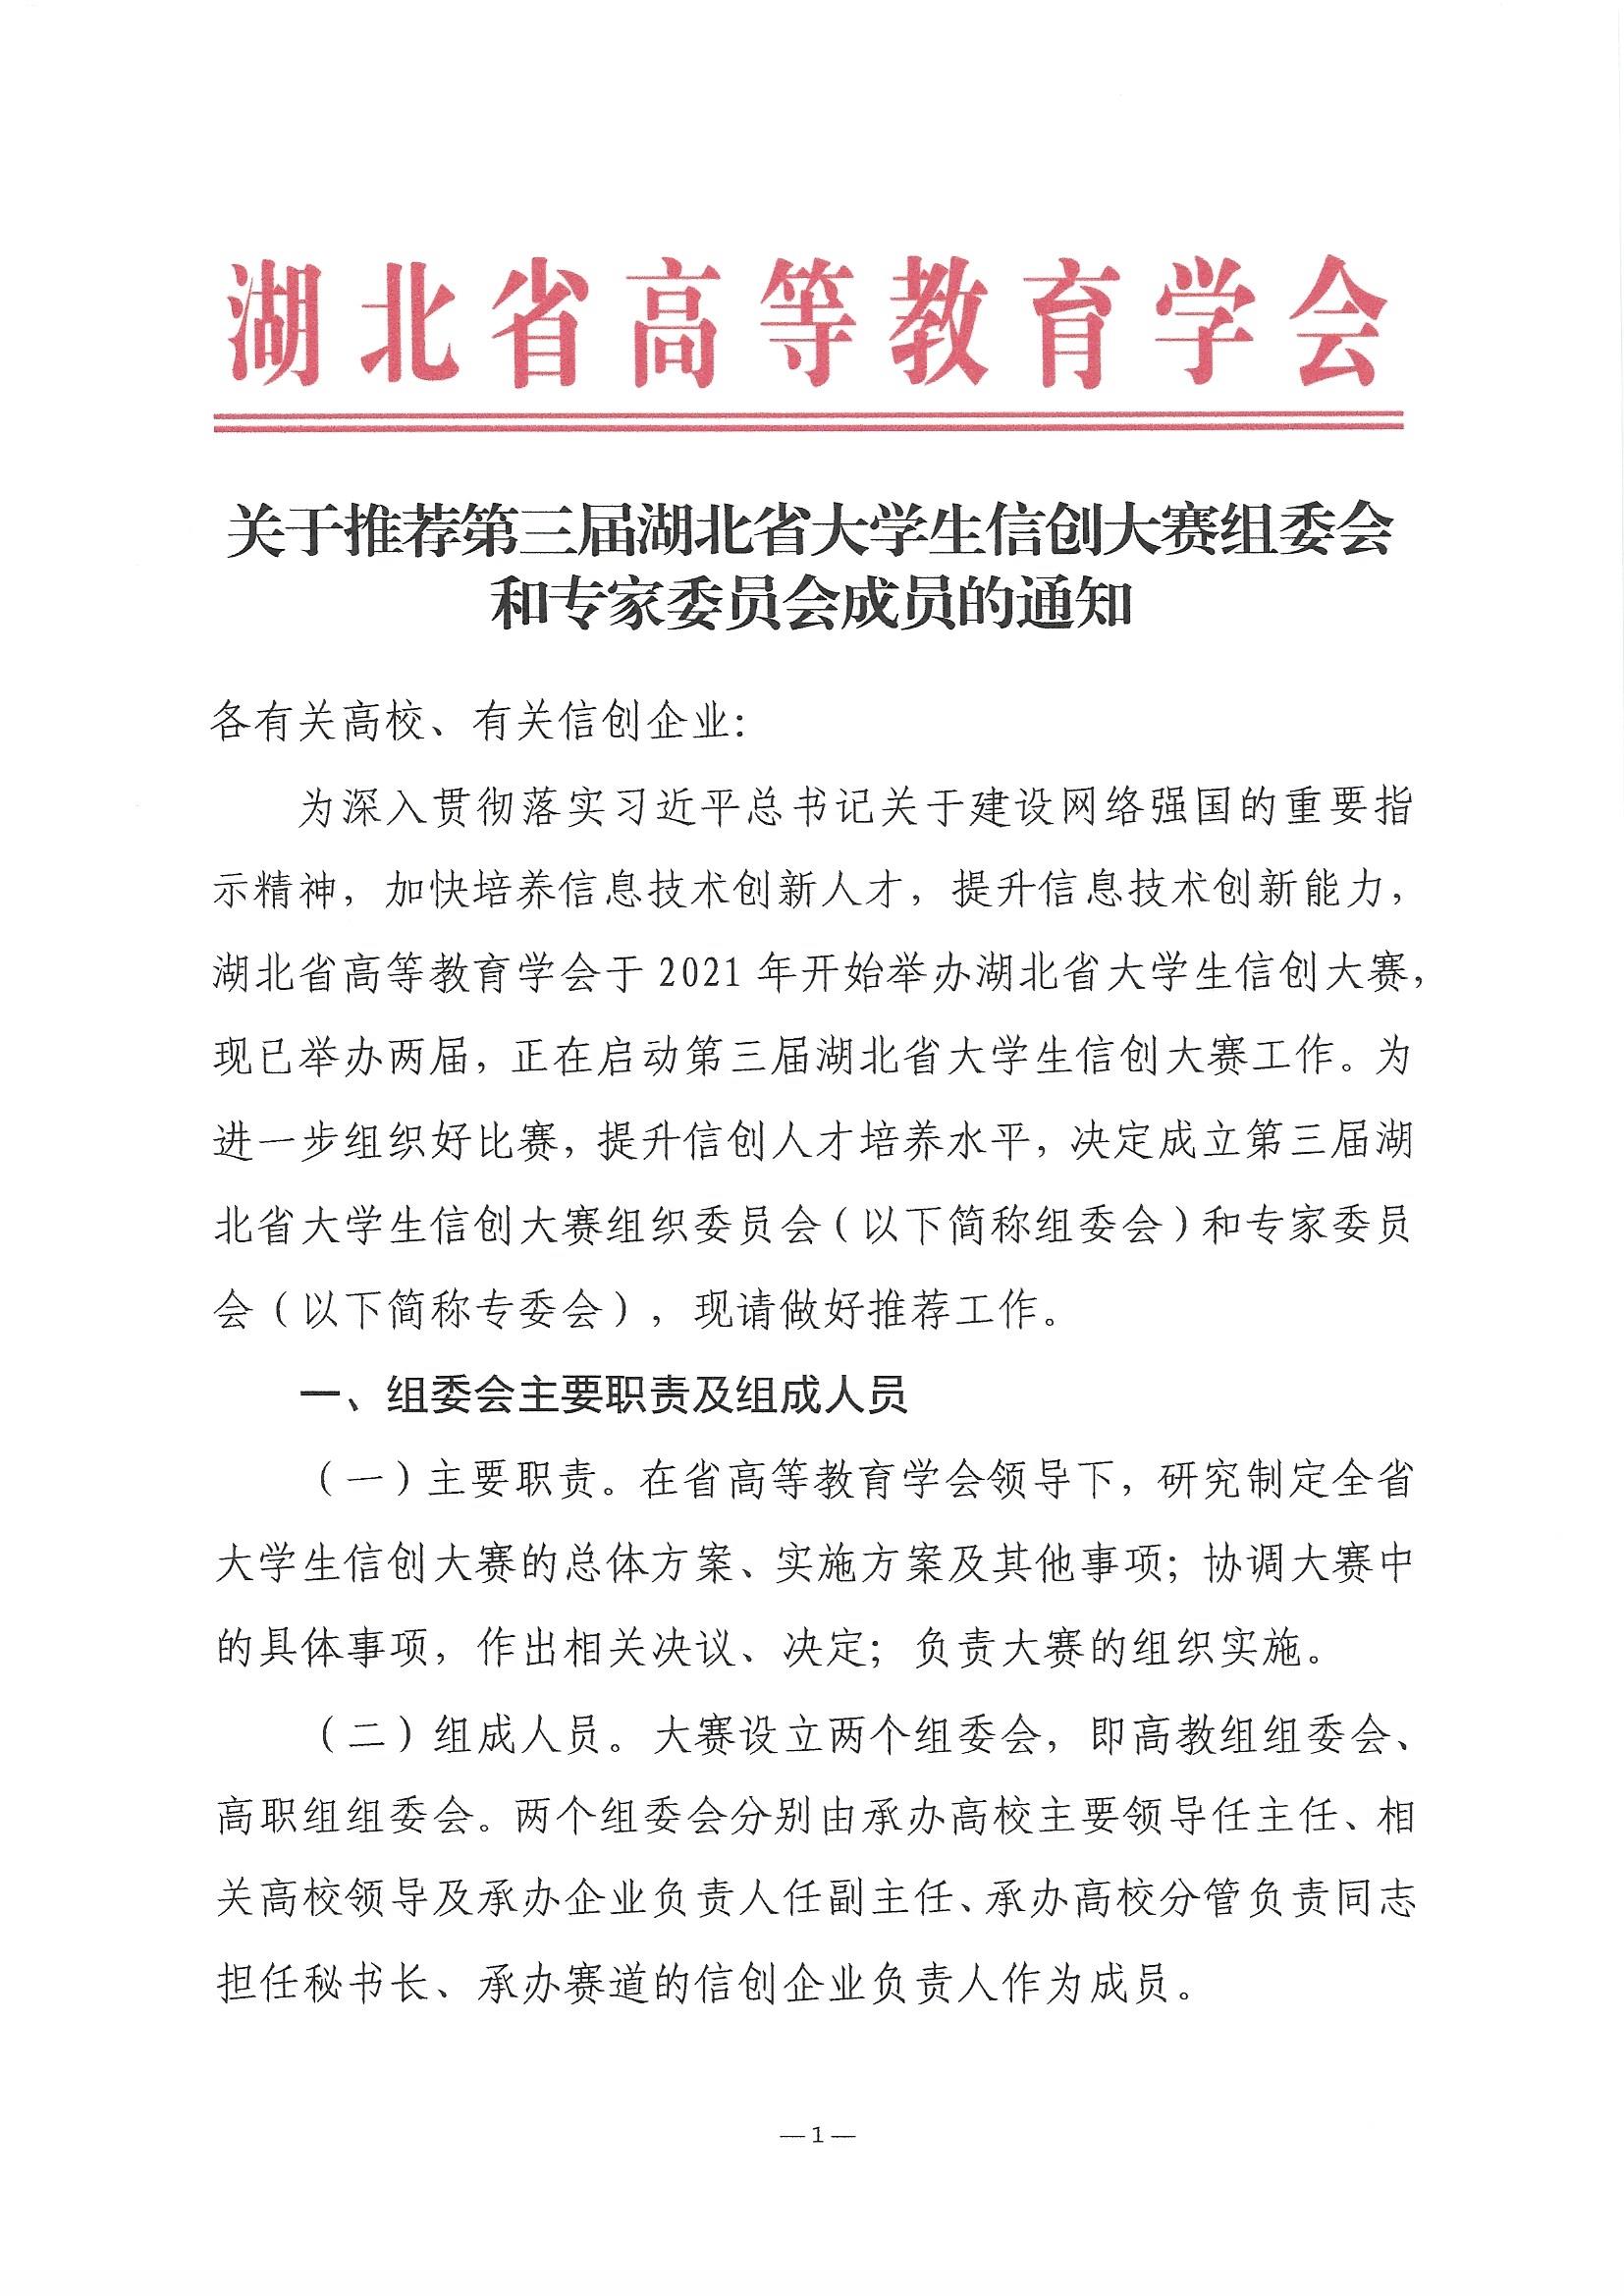 关于推荐第三届湖北省大学生信创大赛组委会和专家委员会成员的通知(1)_页面_1.jpg